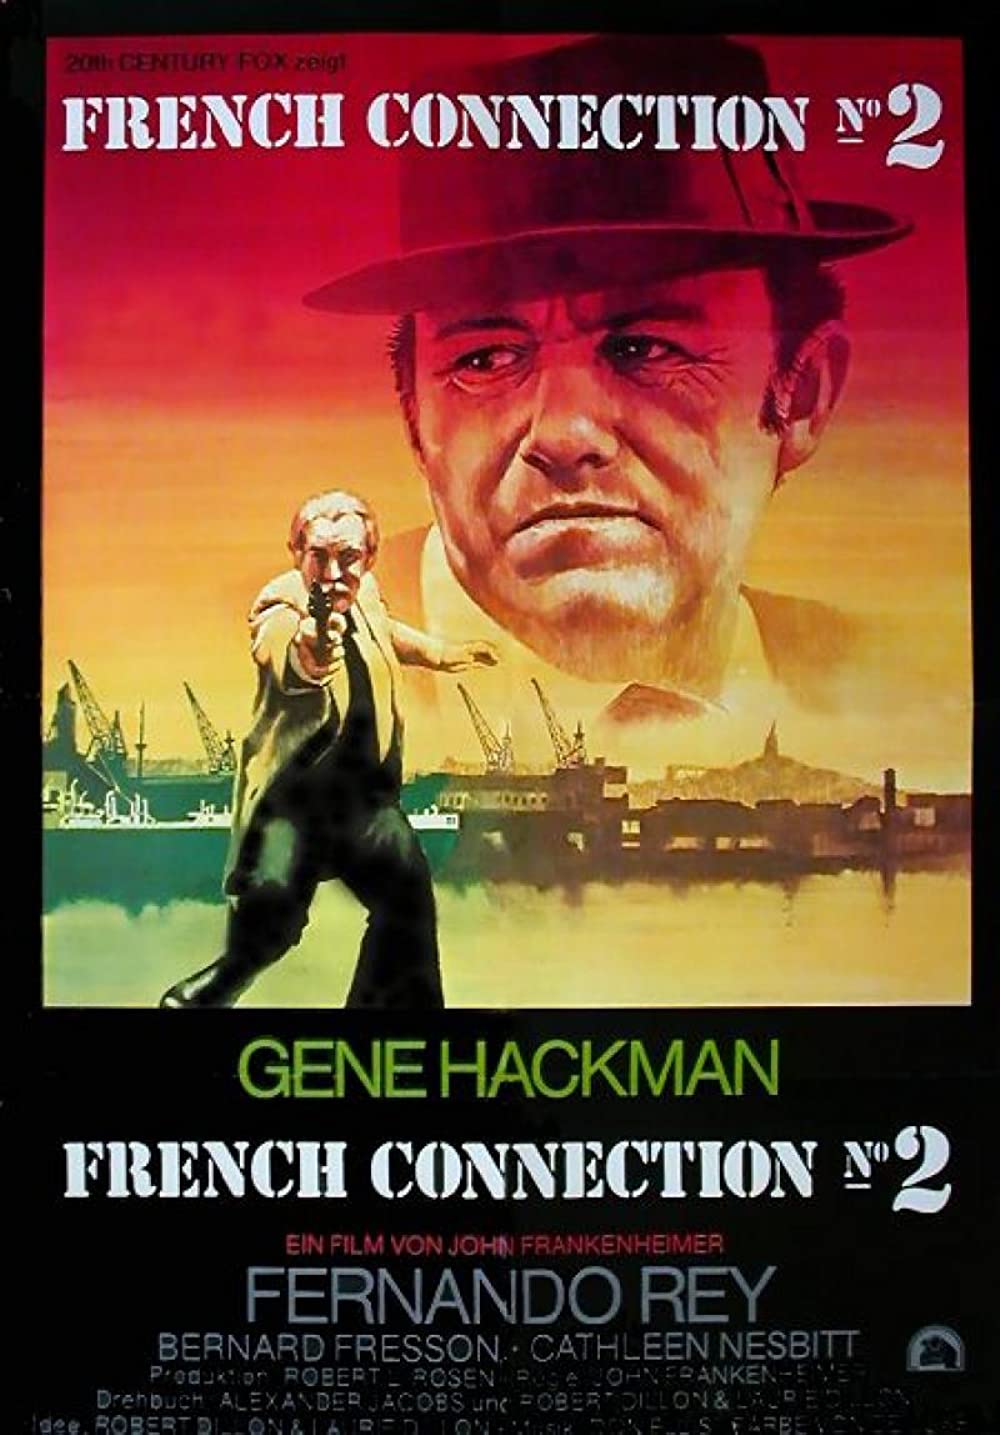 Filmbeschreibung zu French Connection 2